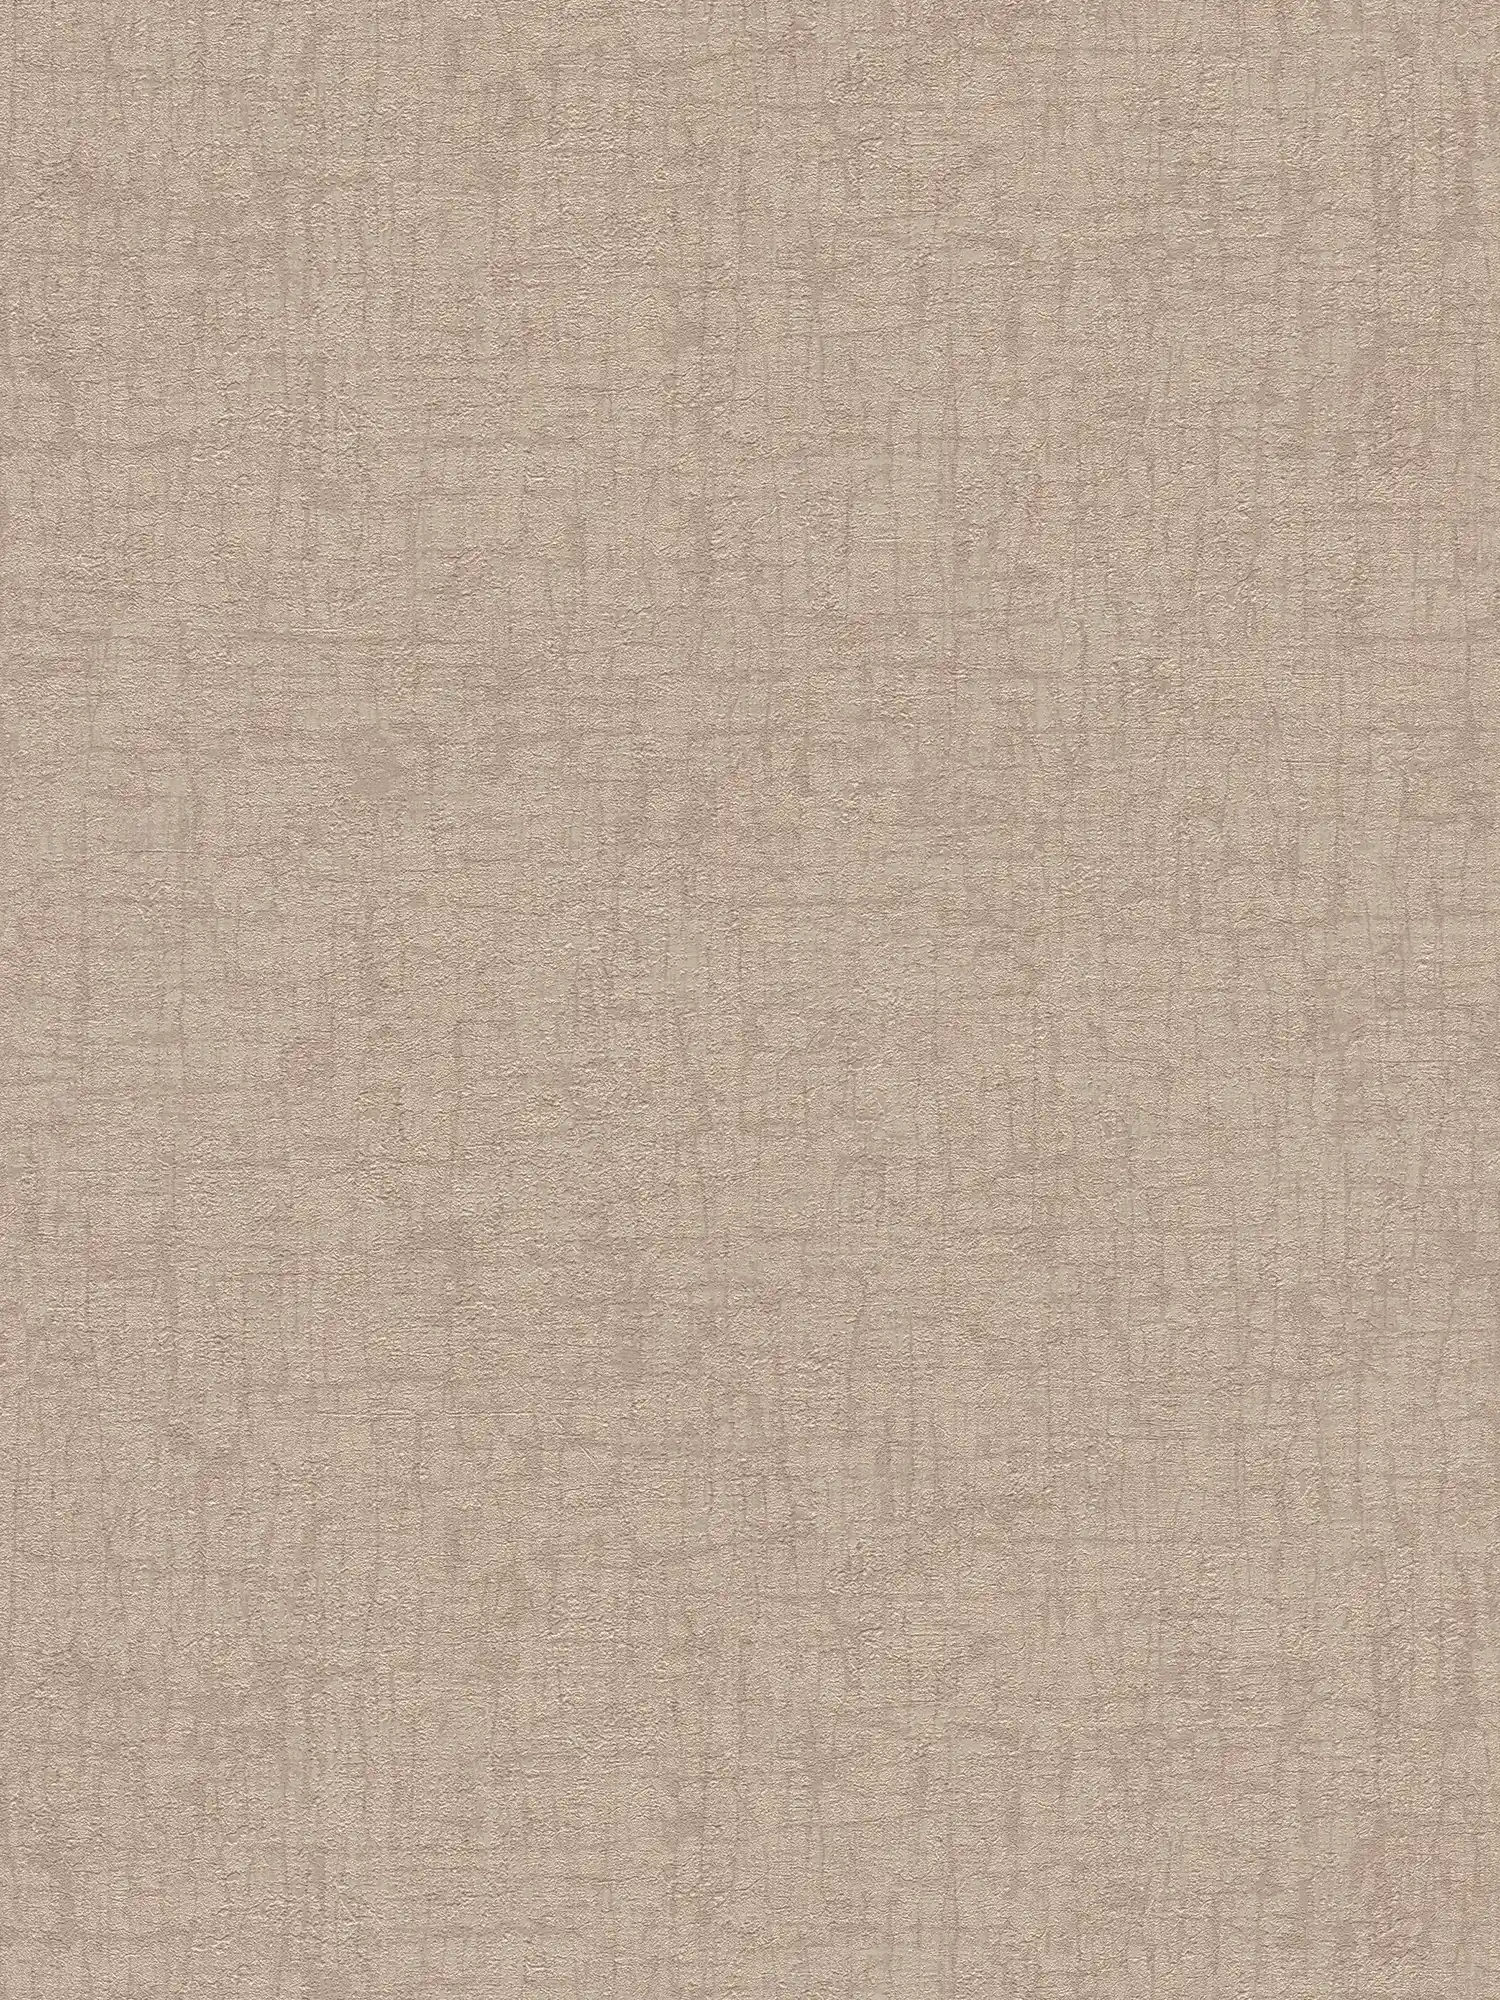 Papel pintado no tejido con textura y ligero brillo - marrón, beige
